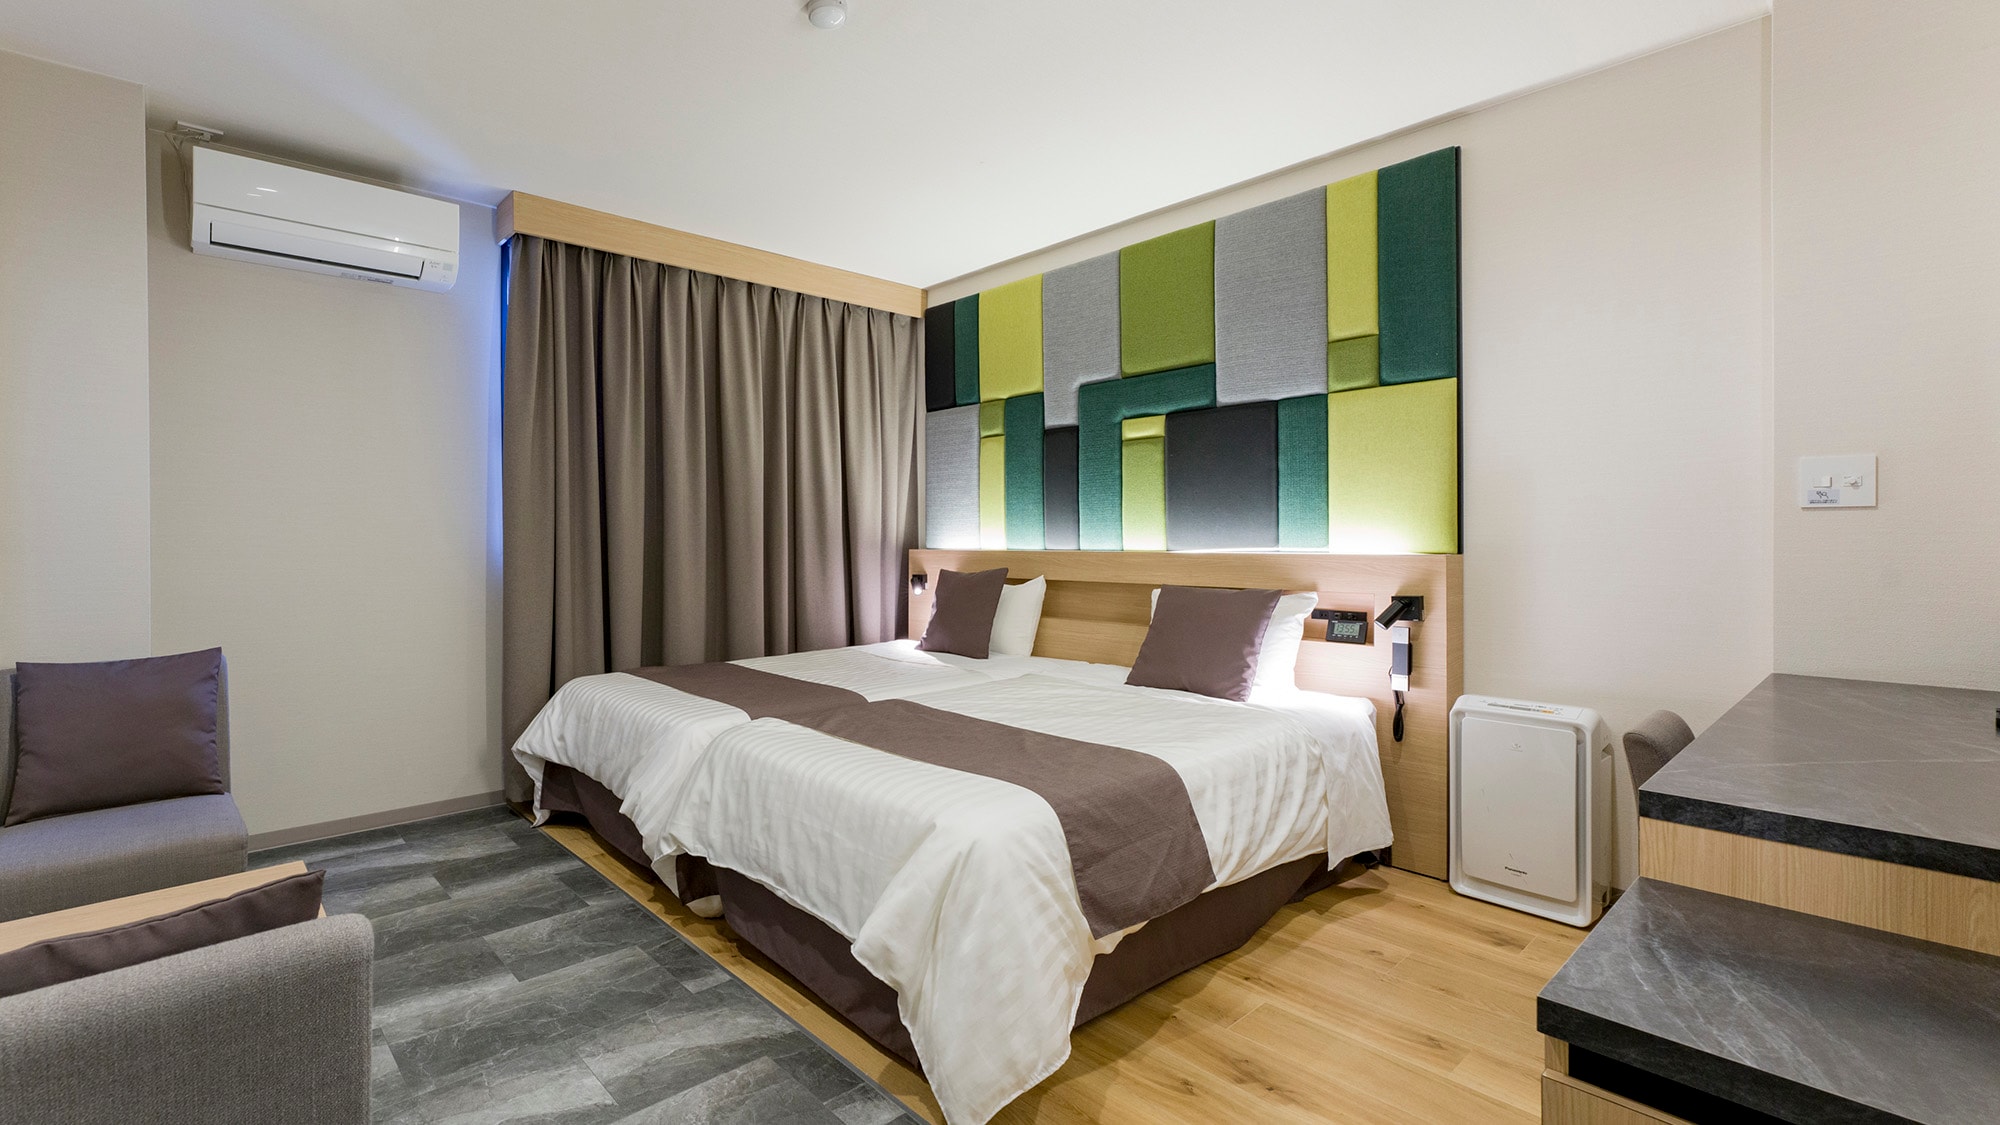 ・【好萊塢雙床房】配備兩張100cm寬床的房間。以筑波山為靈感的綠色系面板給人耳目一新的感覺。